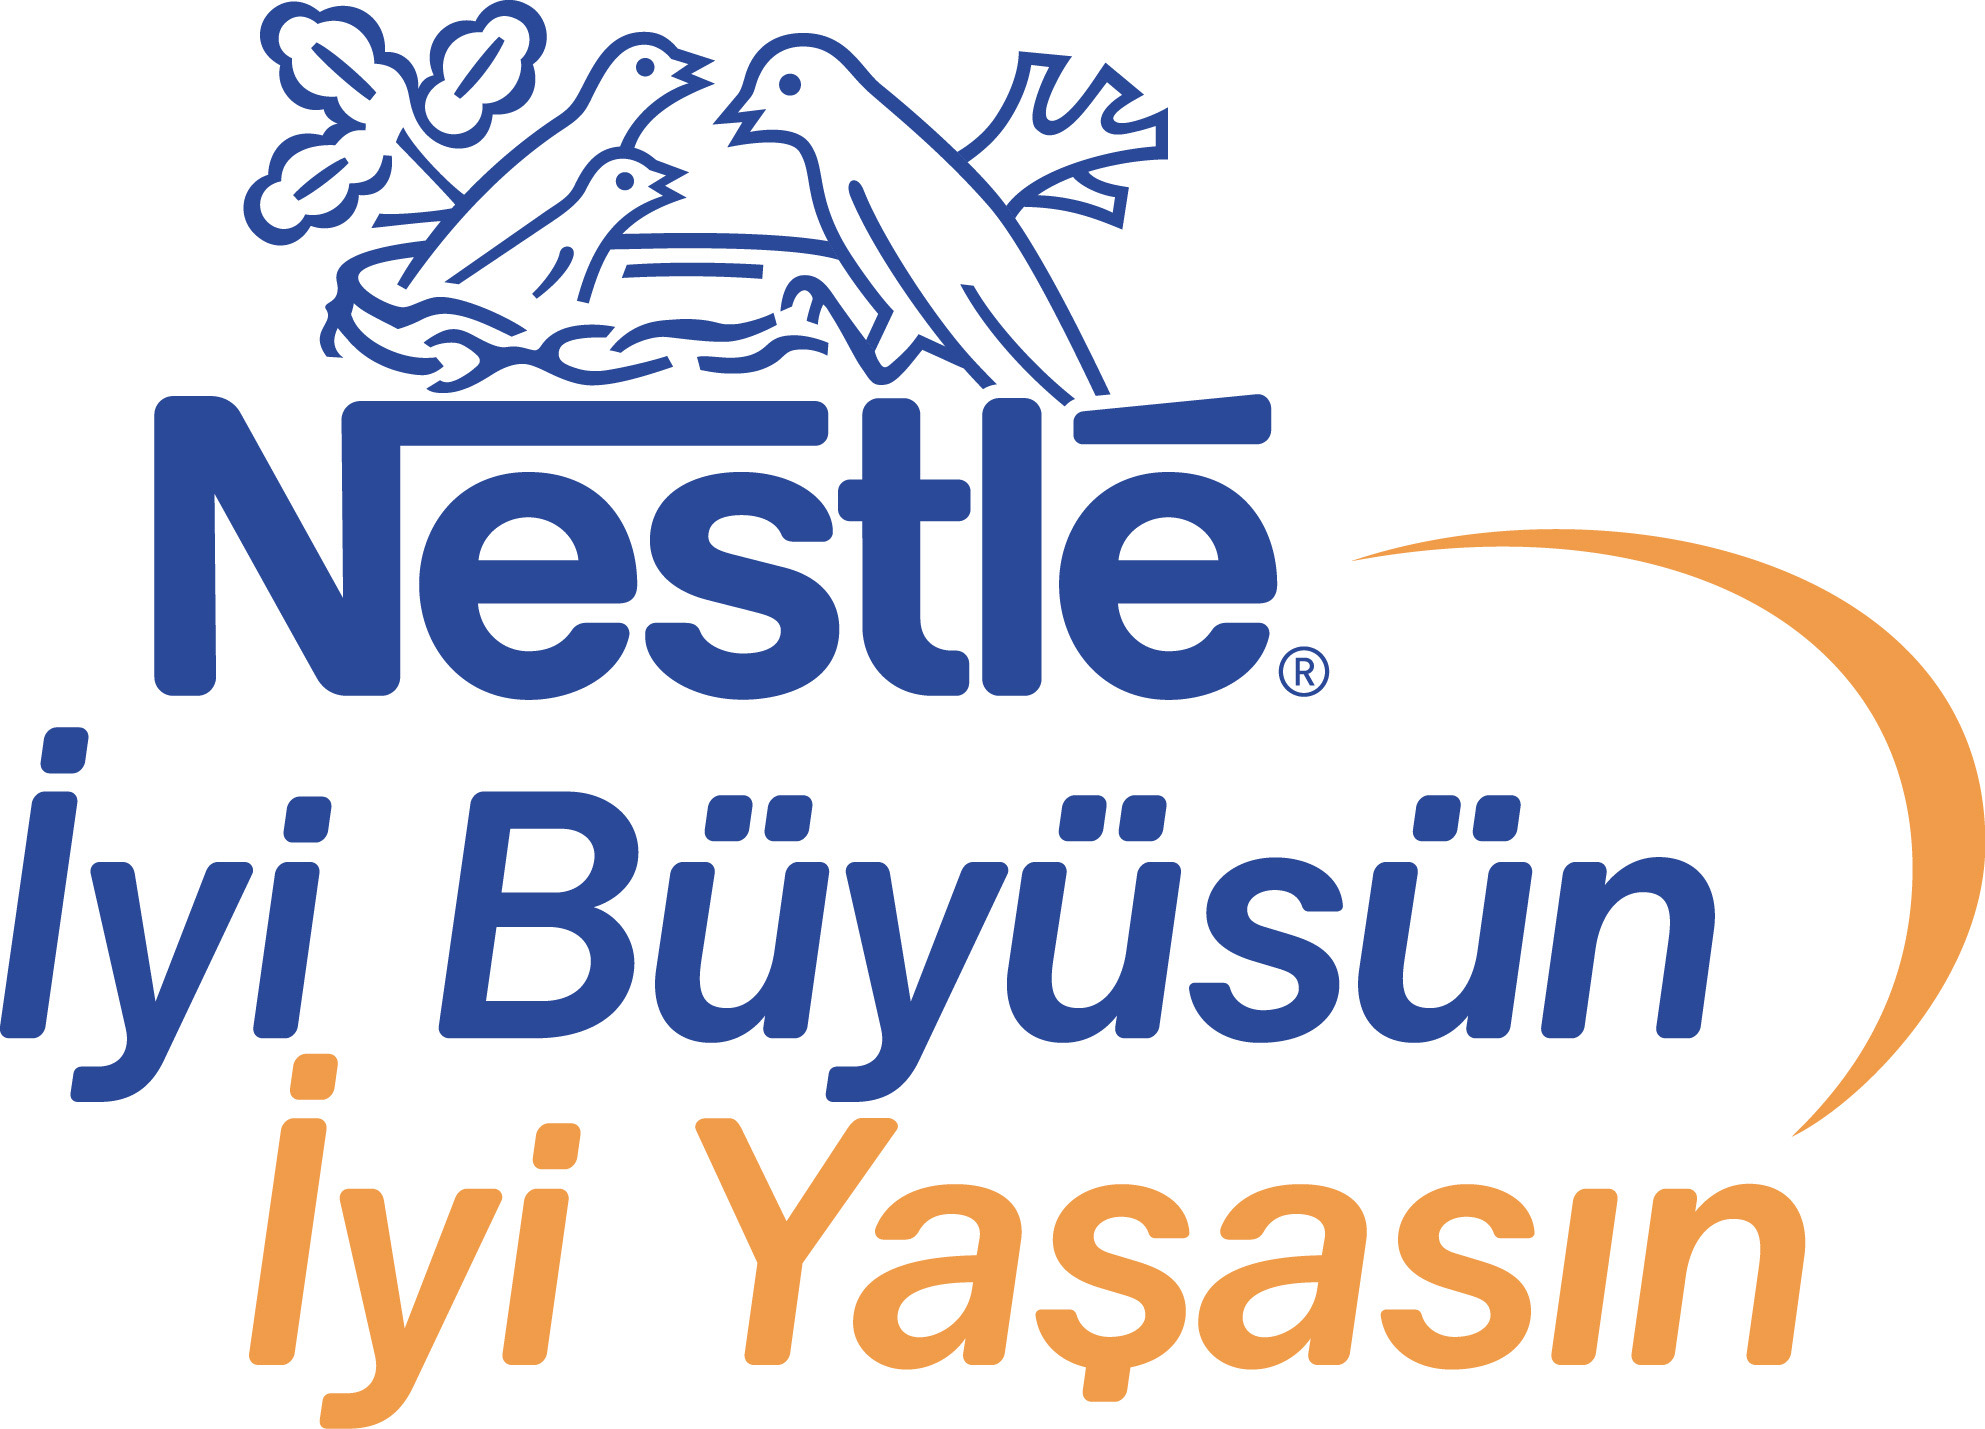 Nestlé Turkey